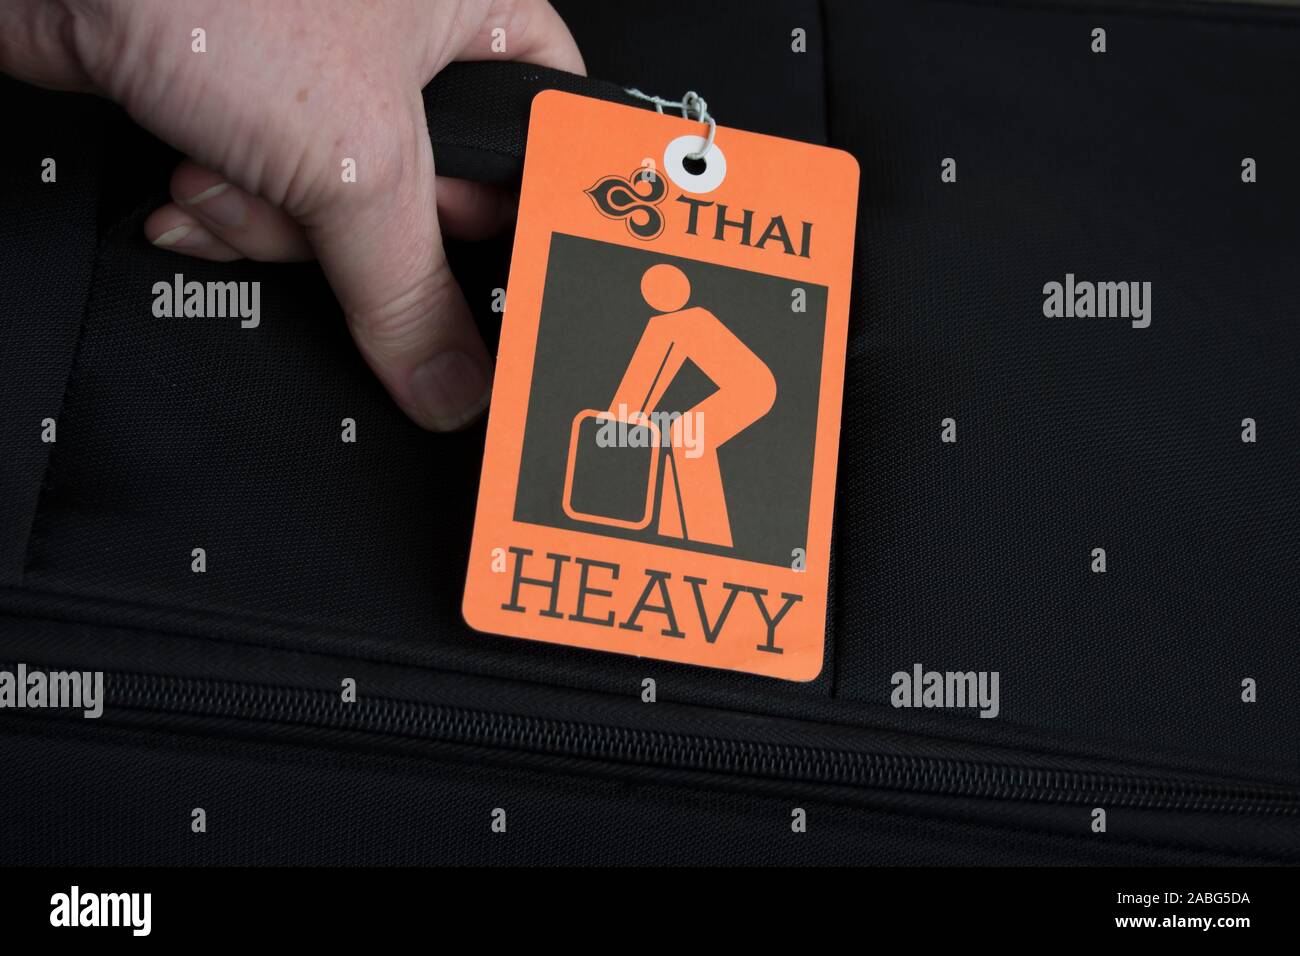 Thai airlines immagini e fotografie stock ad alta risoluzione - Alamy